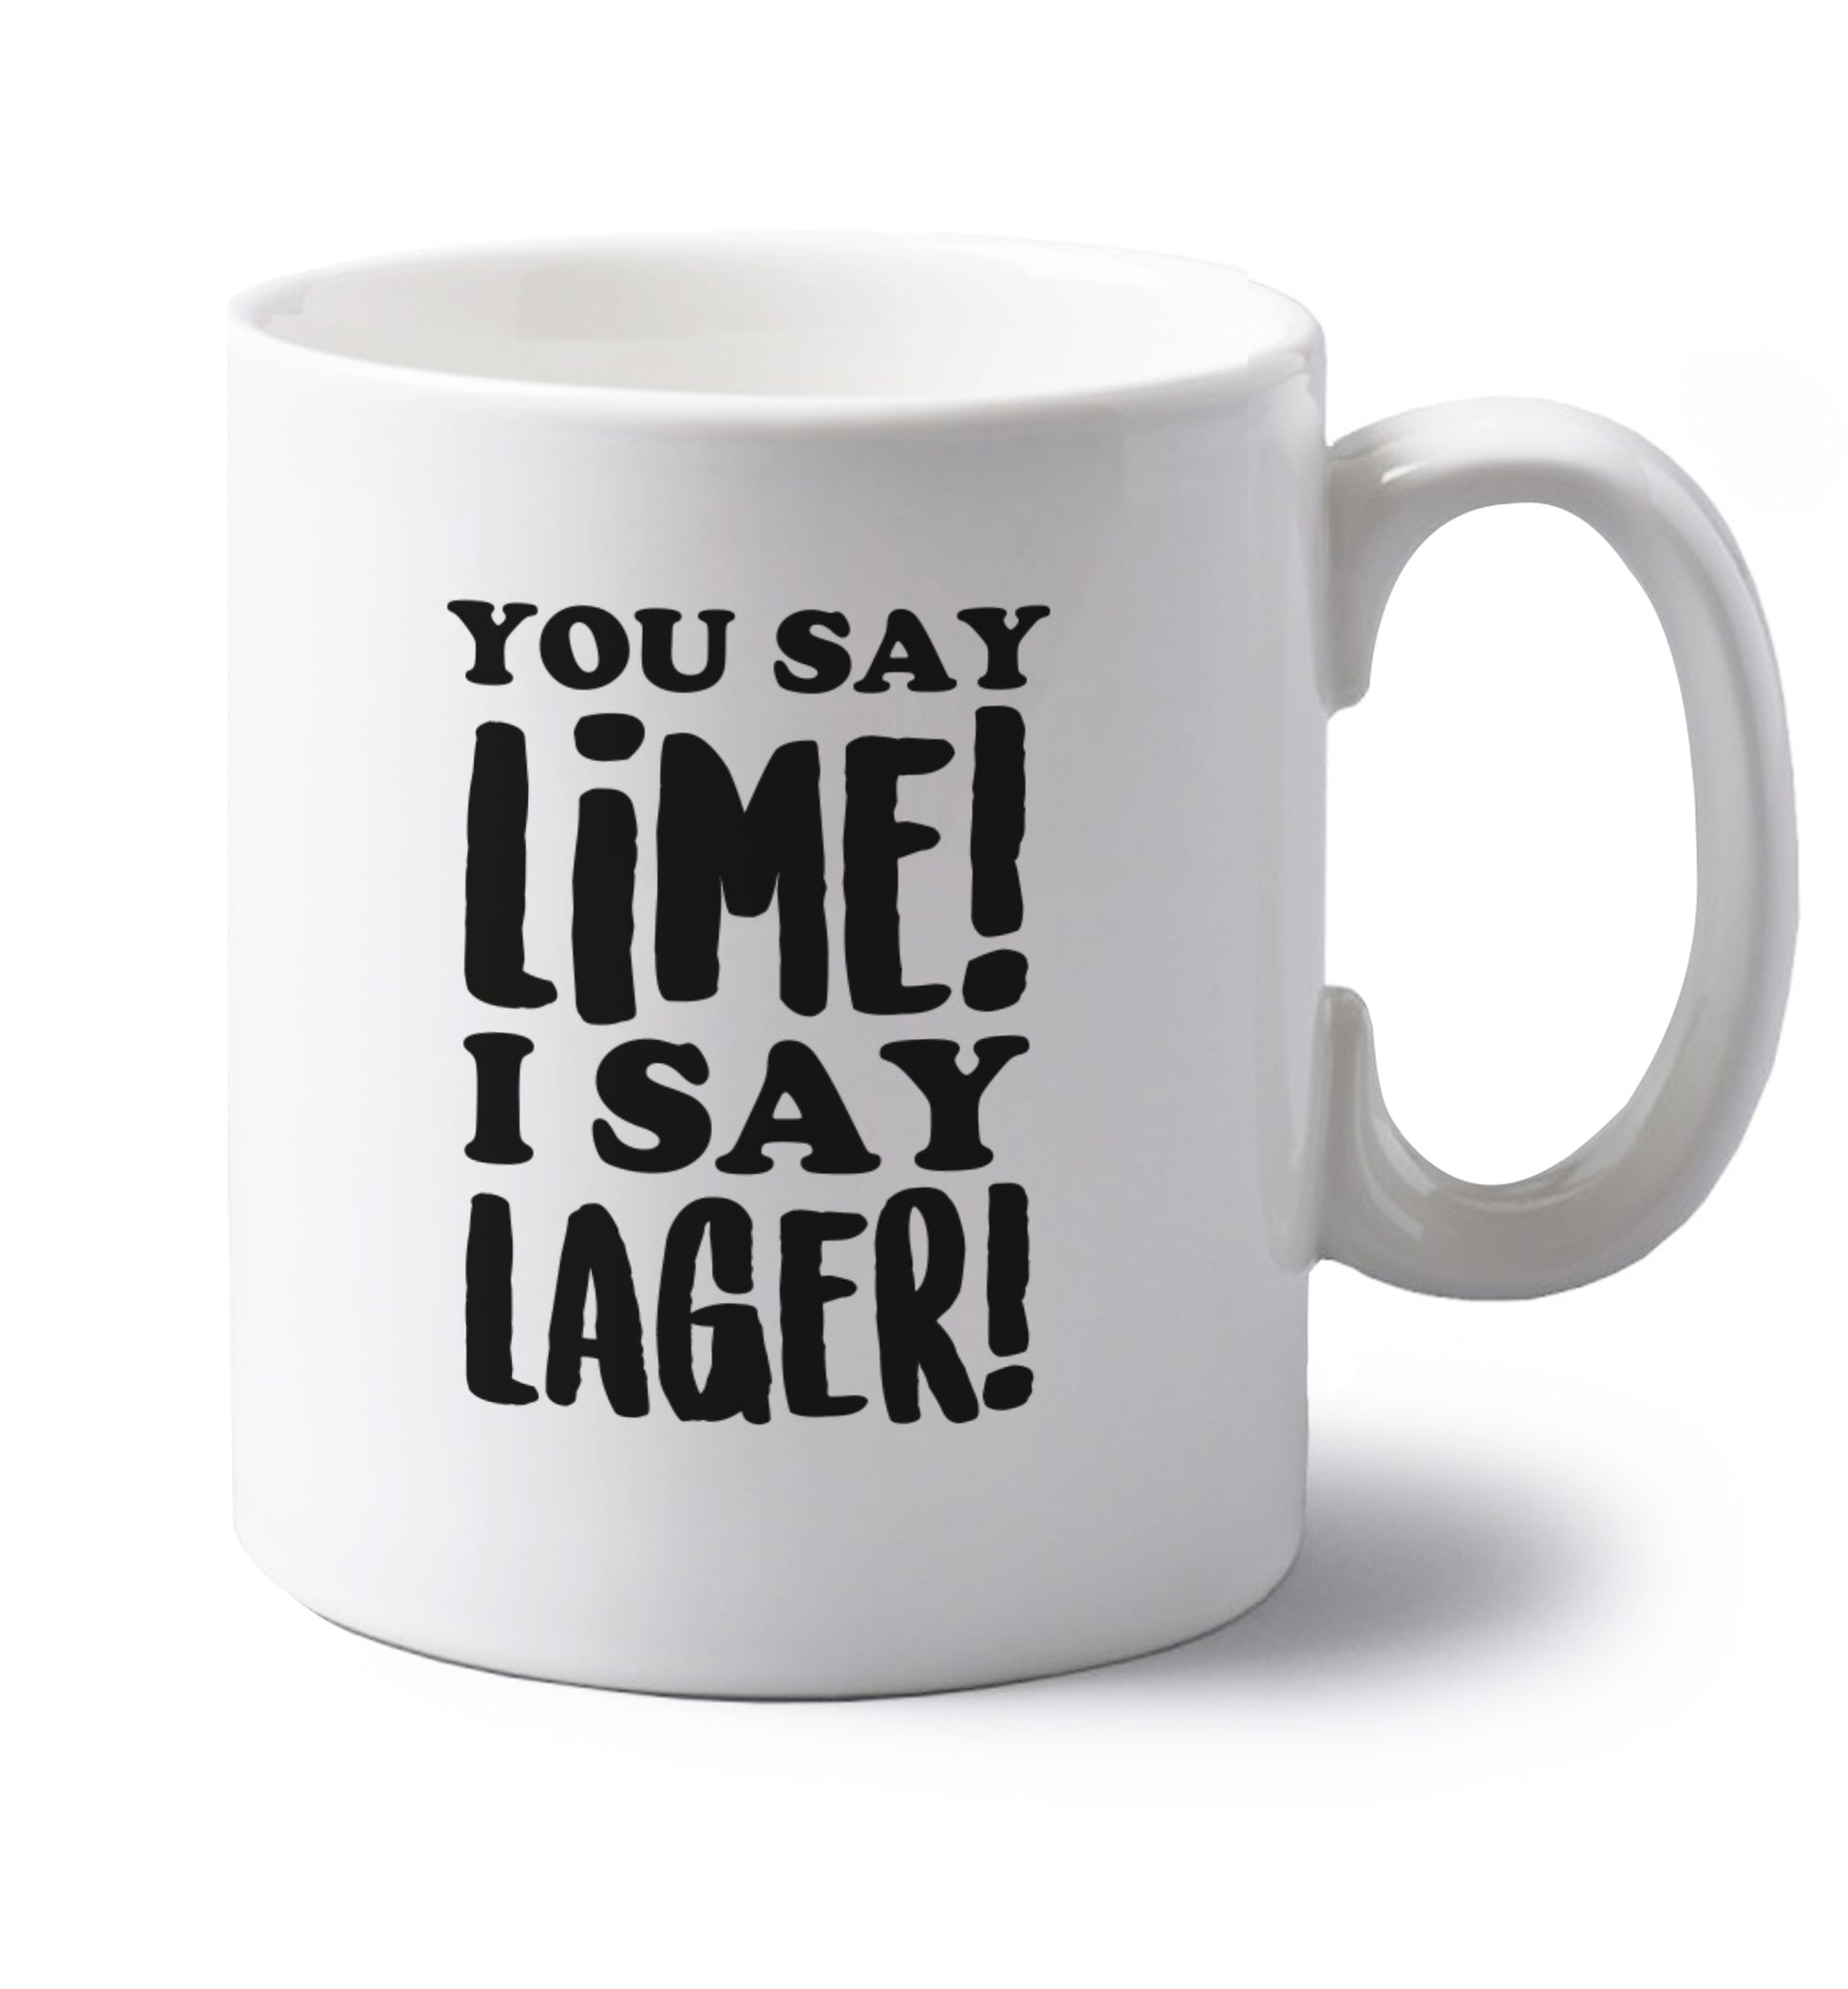 You say lime I say lager! left handed white ceramic mug 